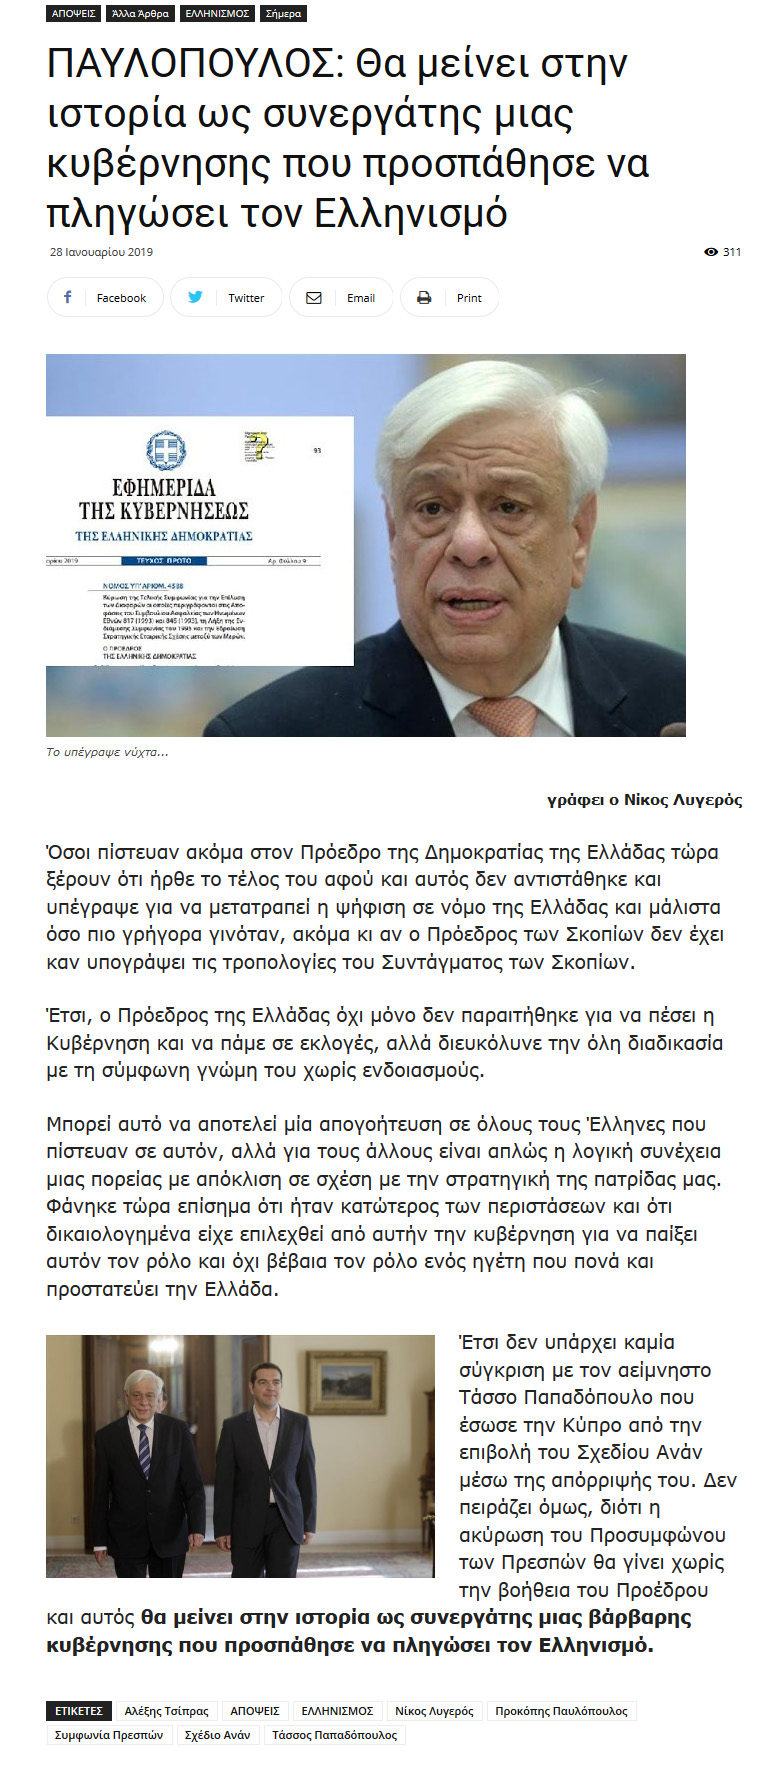 Παυλόπουλος: Θα μείνει στην ιστορία ως συνεργάτης μιας κυβέρνησης που προσπάθησε να πληγώσει τον Ελληνισμό, akromolio, 28/01/2019 - Publication